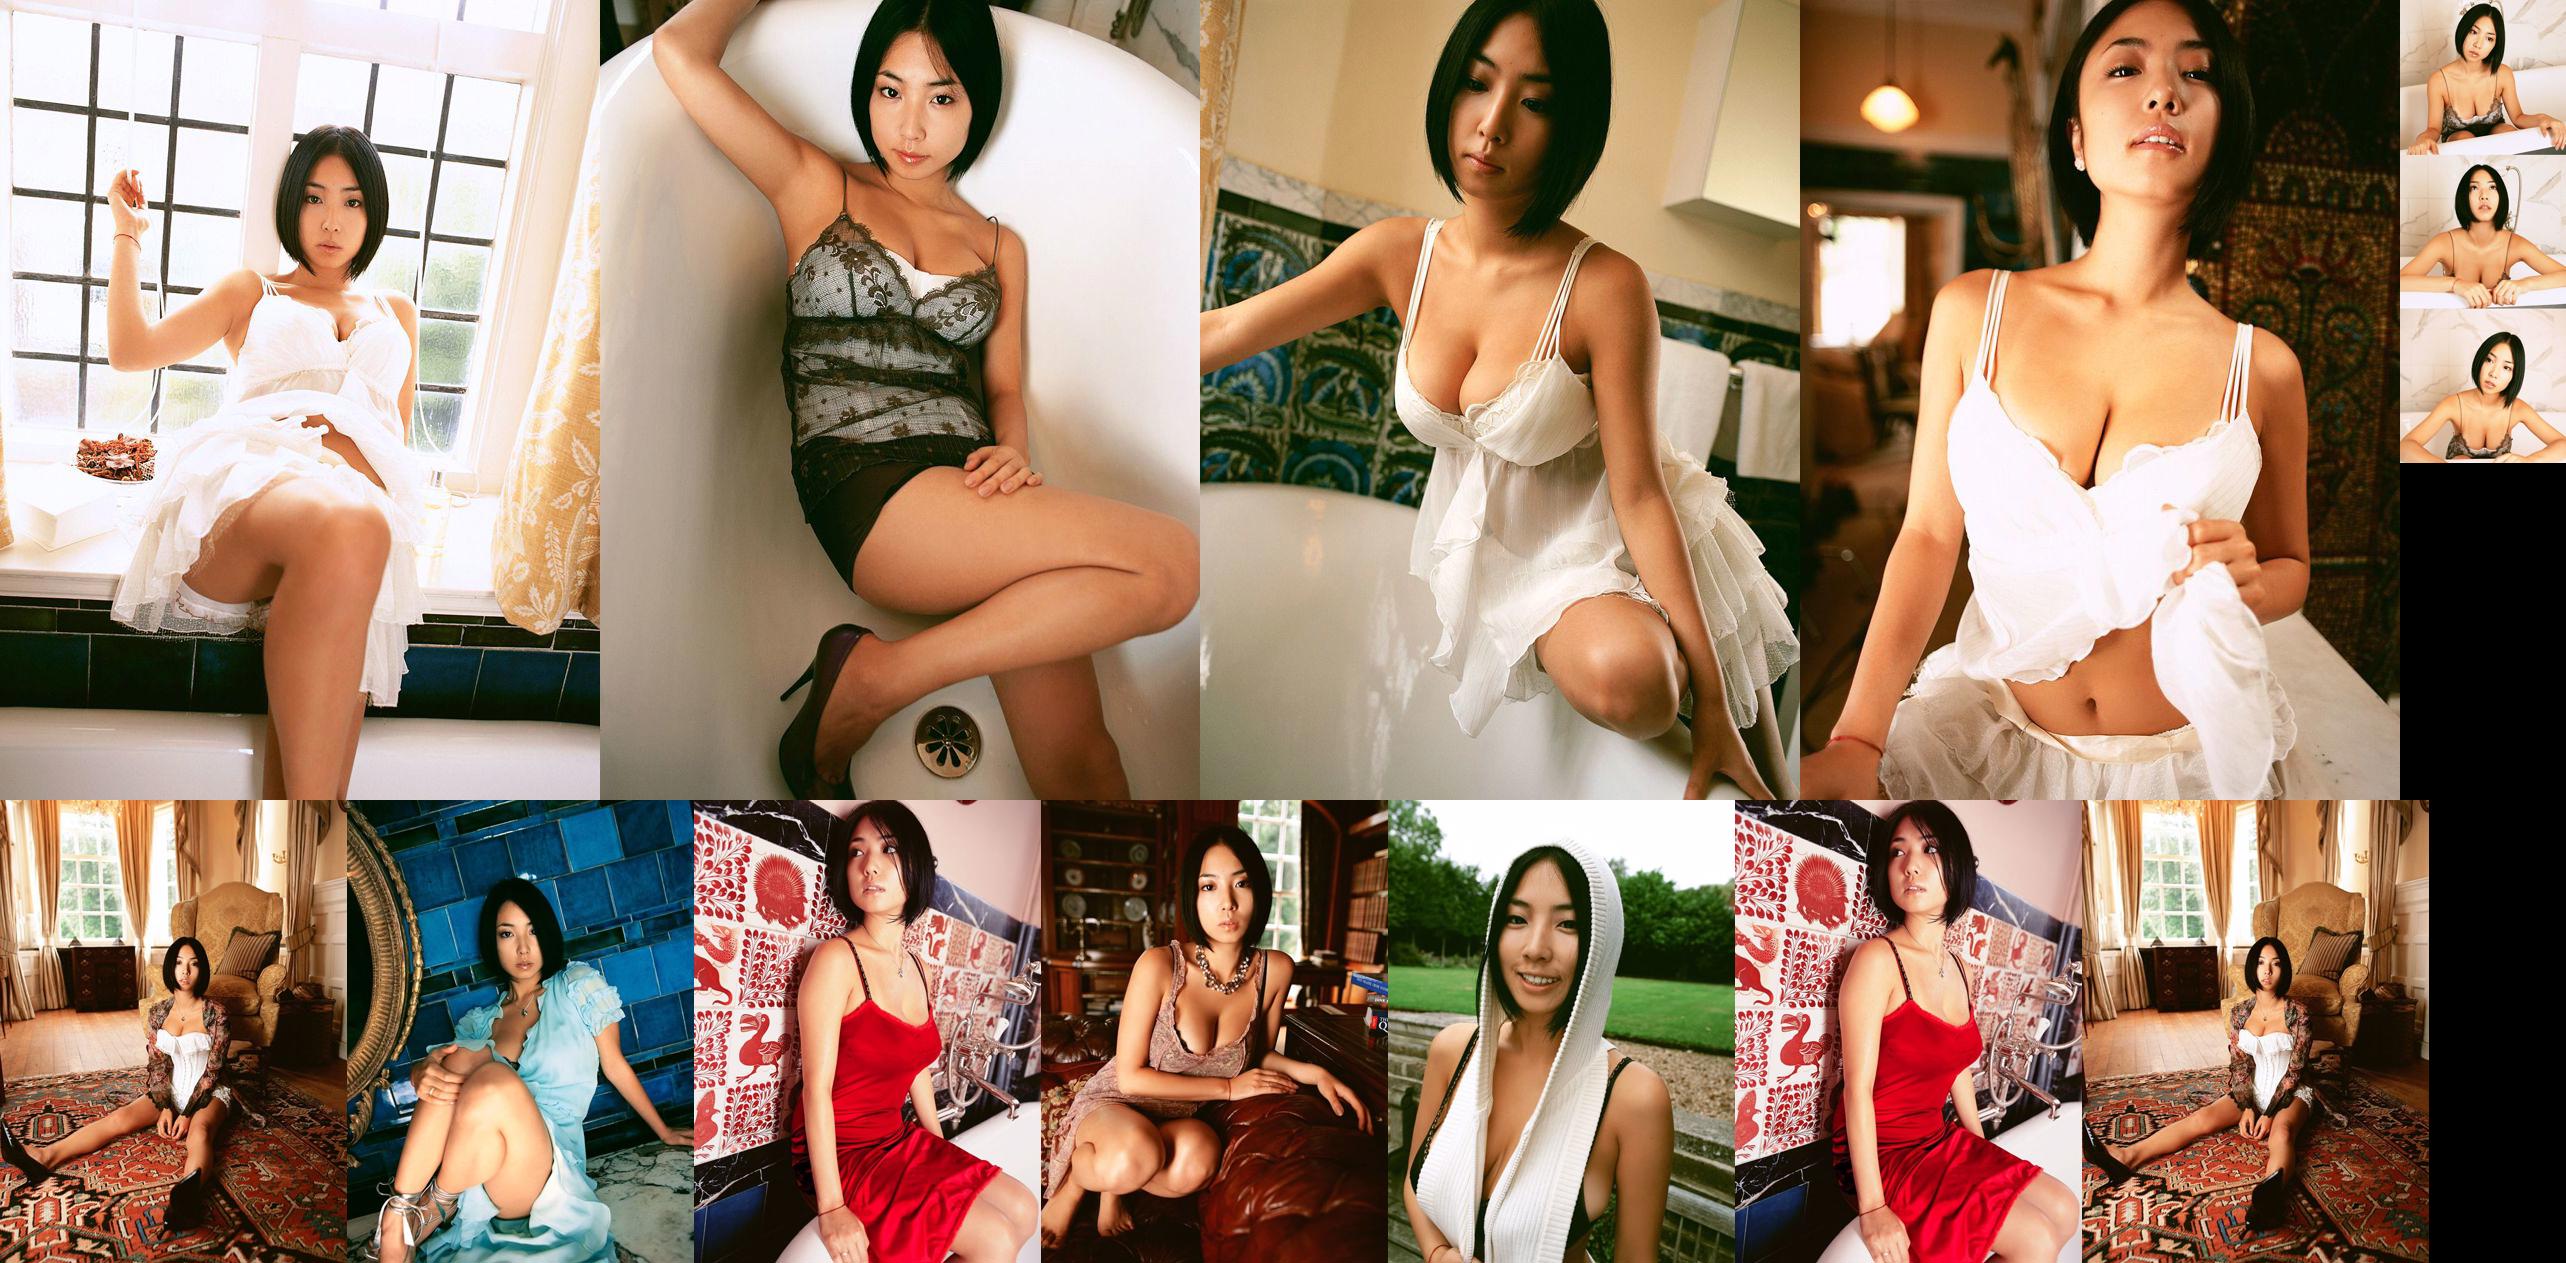 Megumi "Love & Spice" [Bild.tv] No.83d931 Seite 2